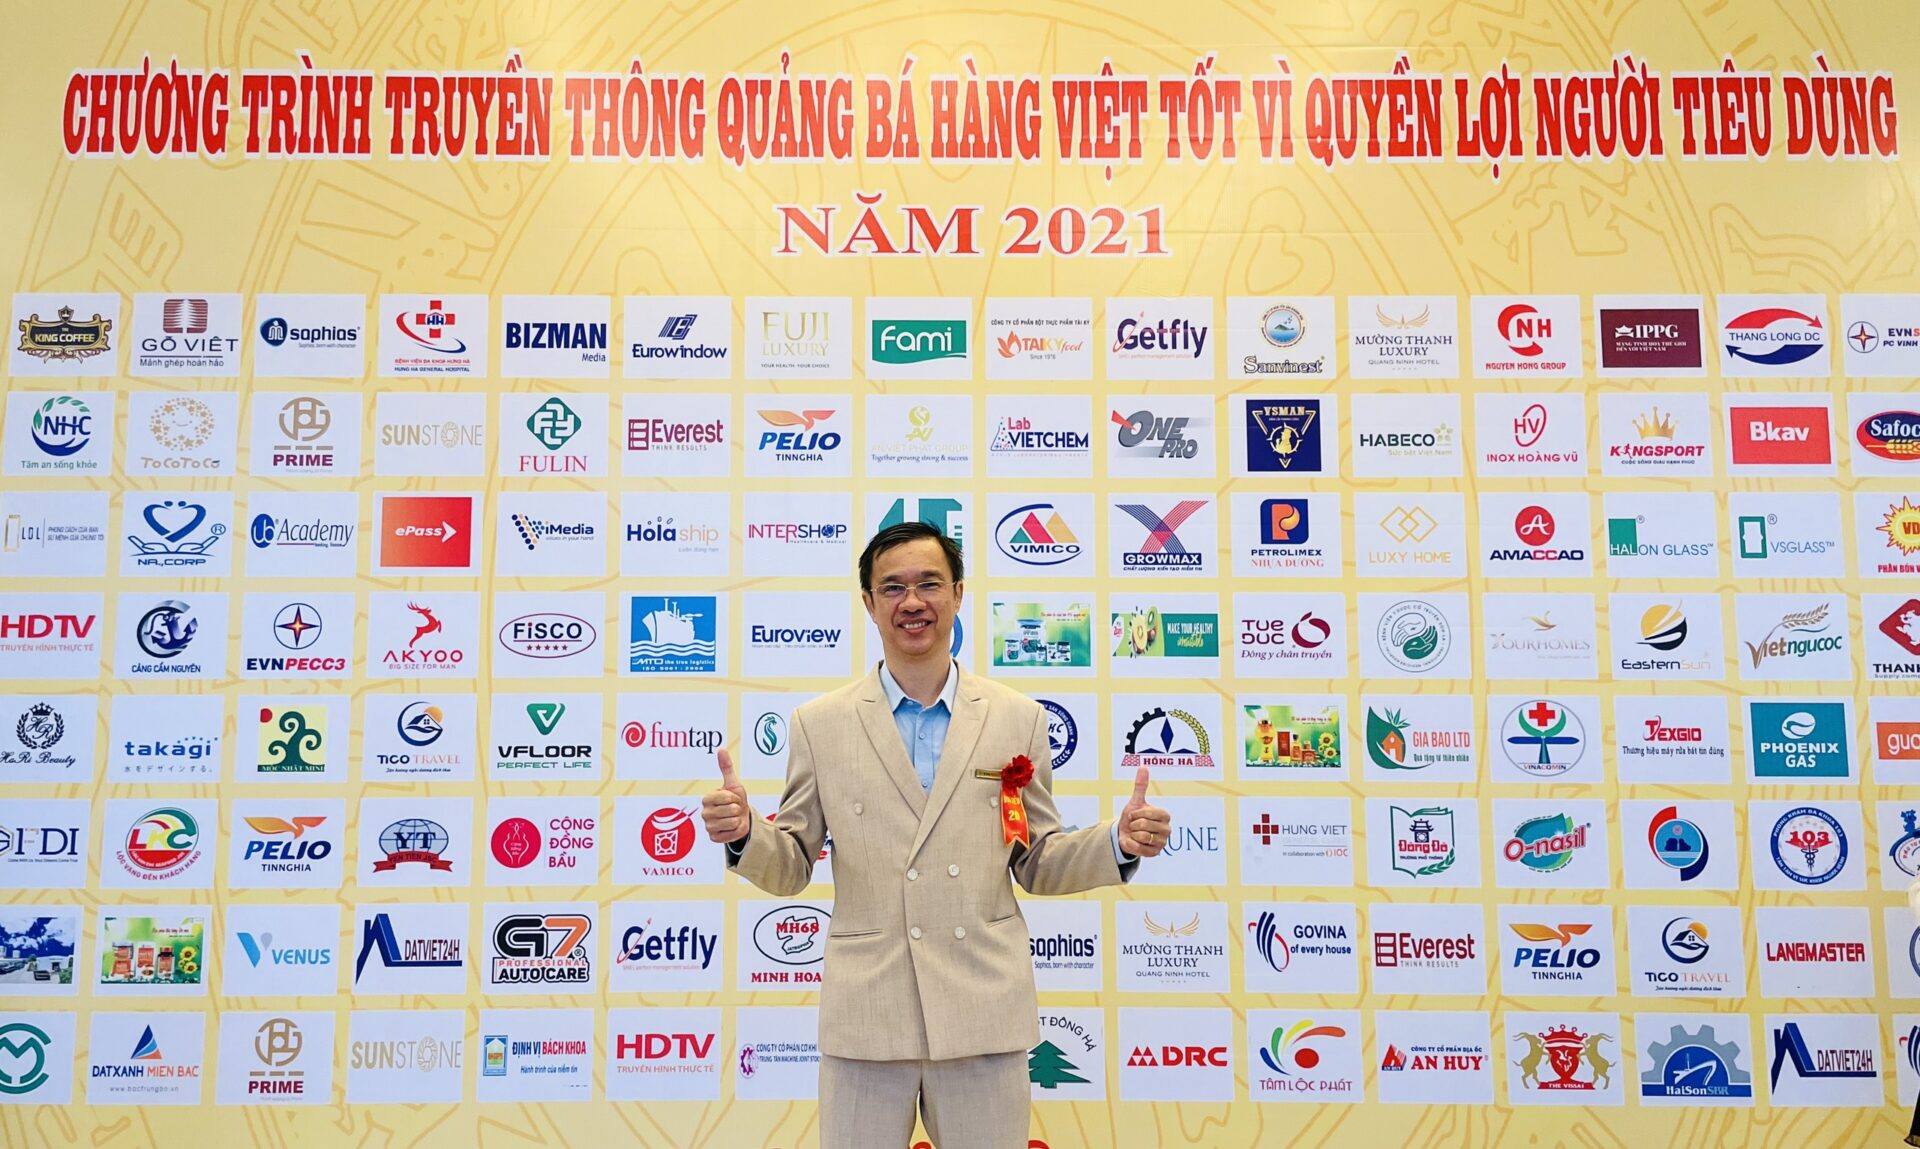 Ông Trần Quốc Điền – Phó Tổng giám đốc EVNPECC3 – đã đến tham dự và nhận giải